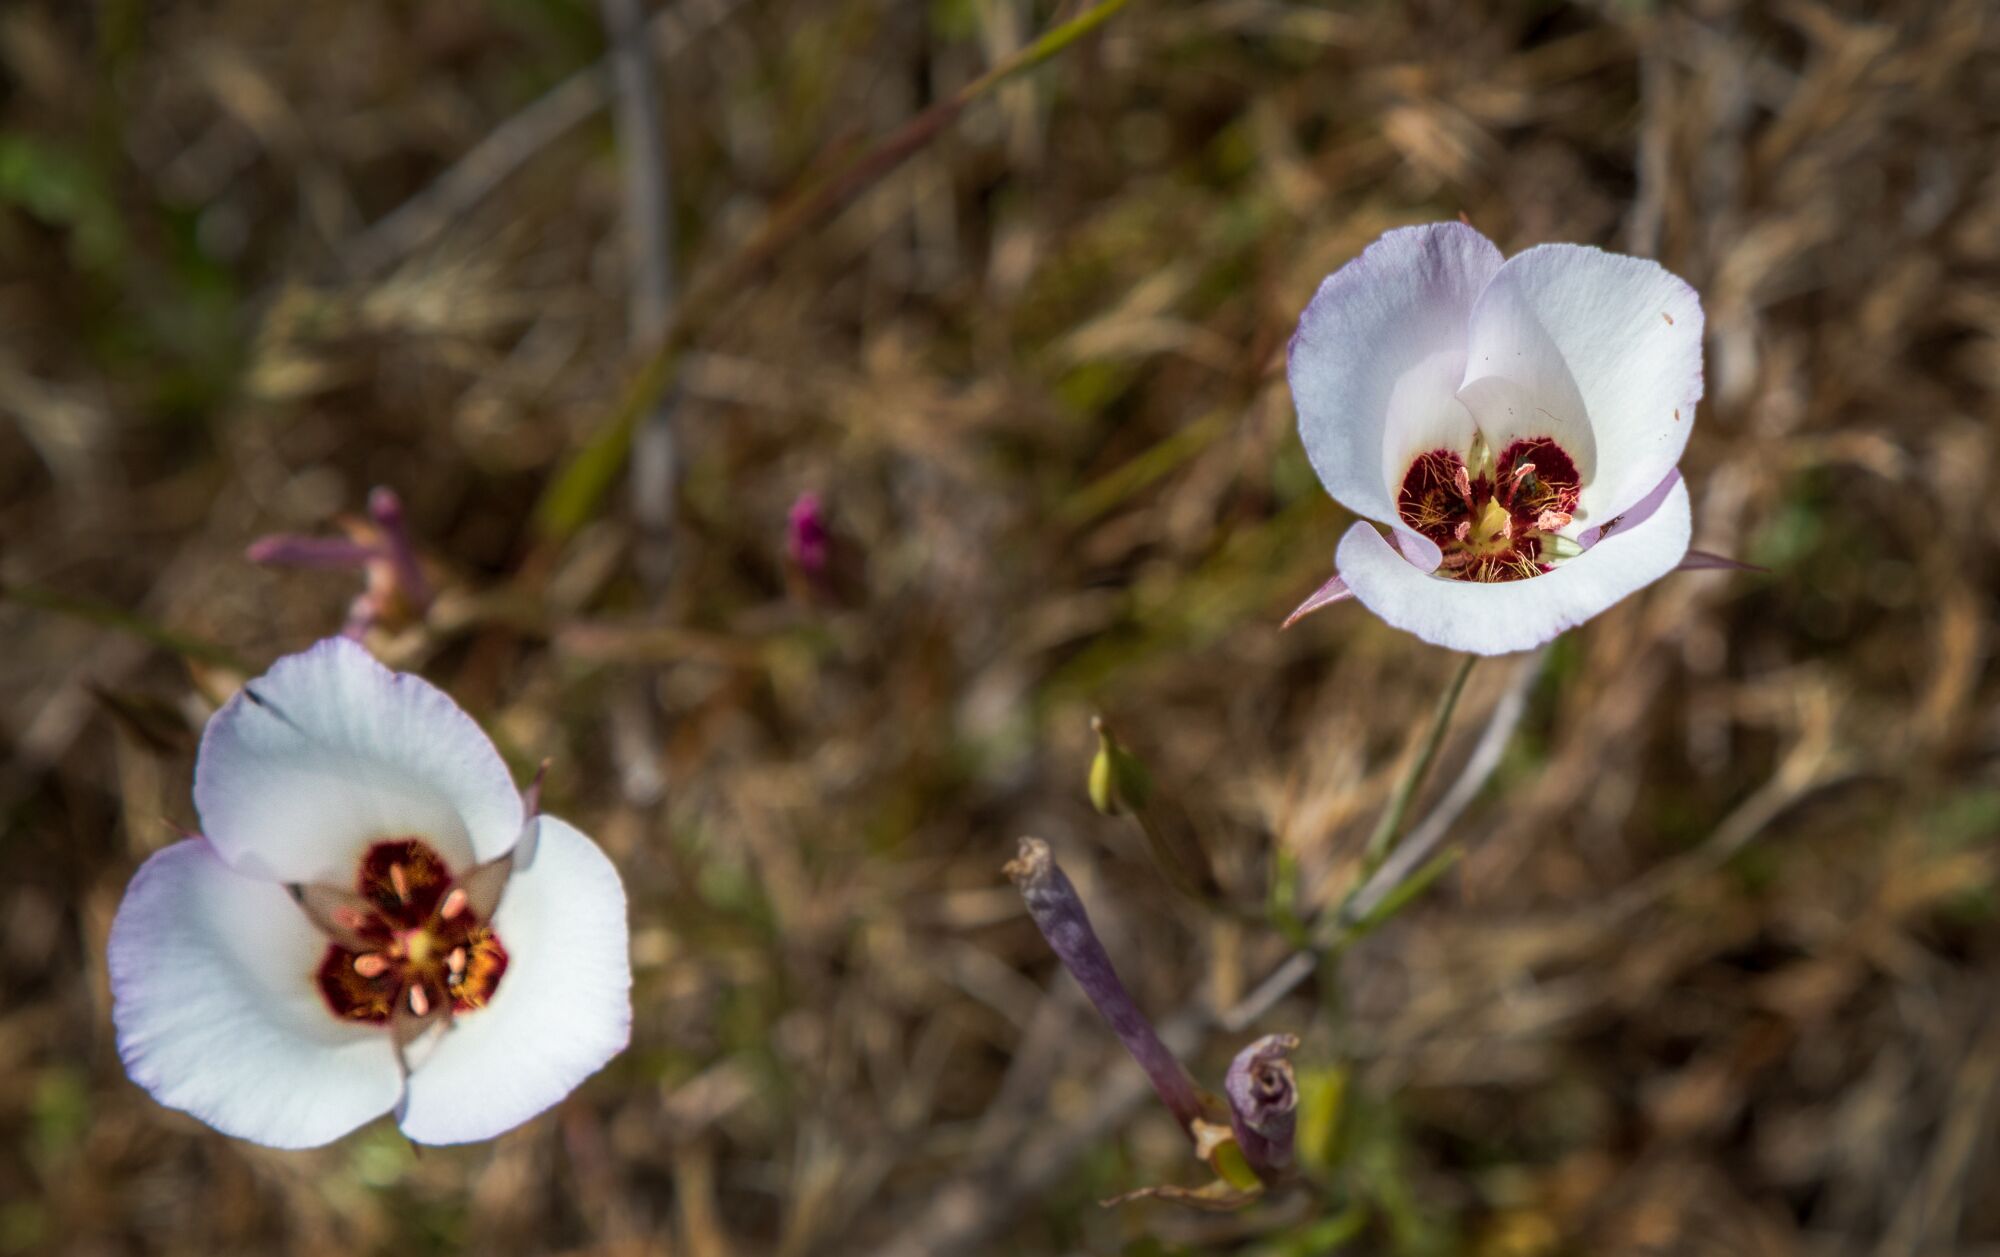 Closeup of a Catalina Mariposa Lily or Castilleja exserta, a native plant.